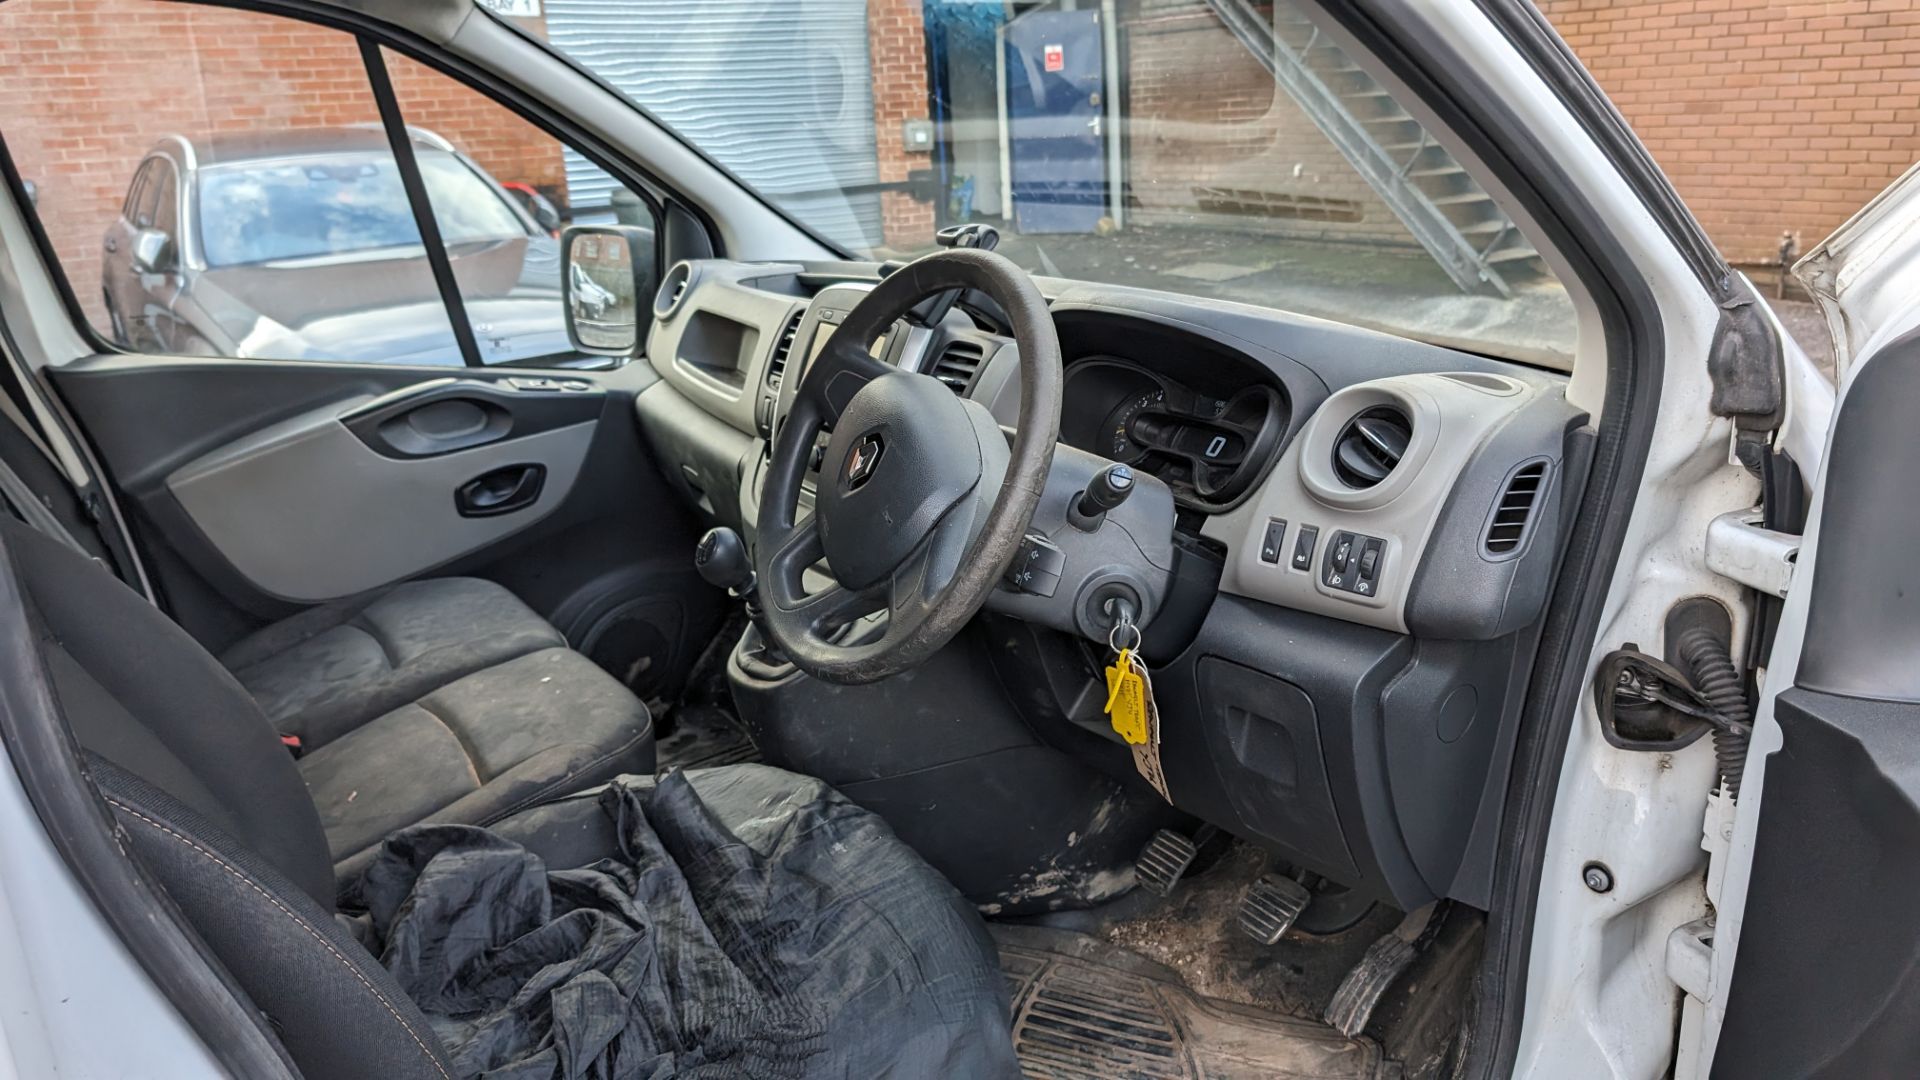 2015 Renault Trafic van - Image 16 of 26